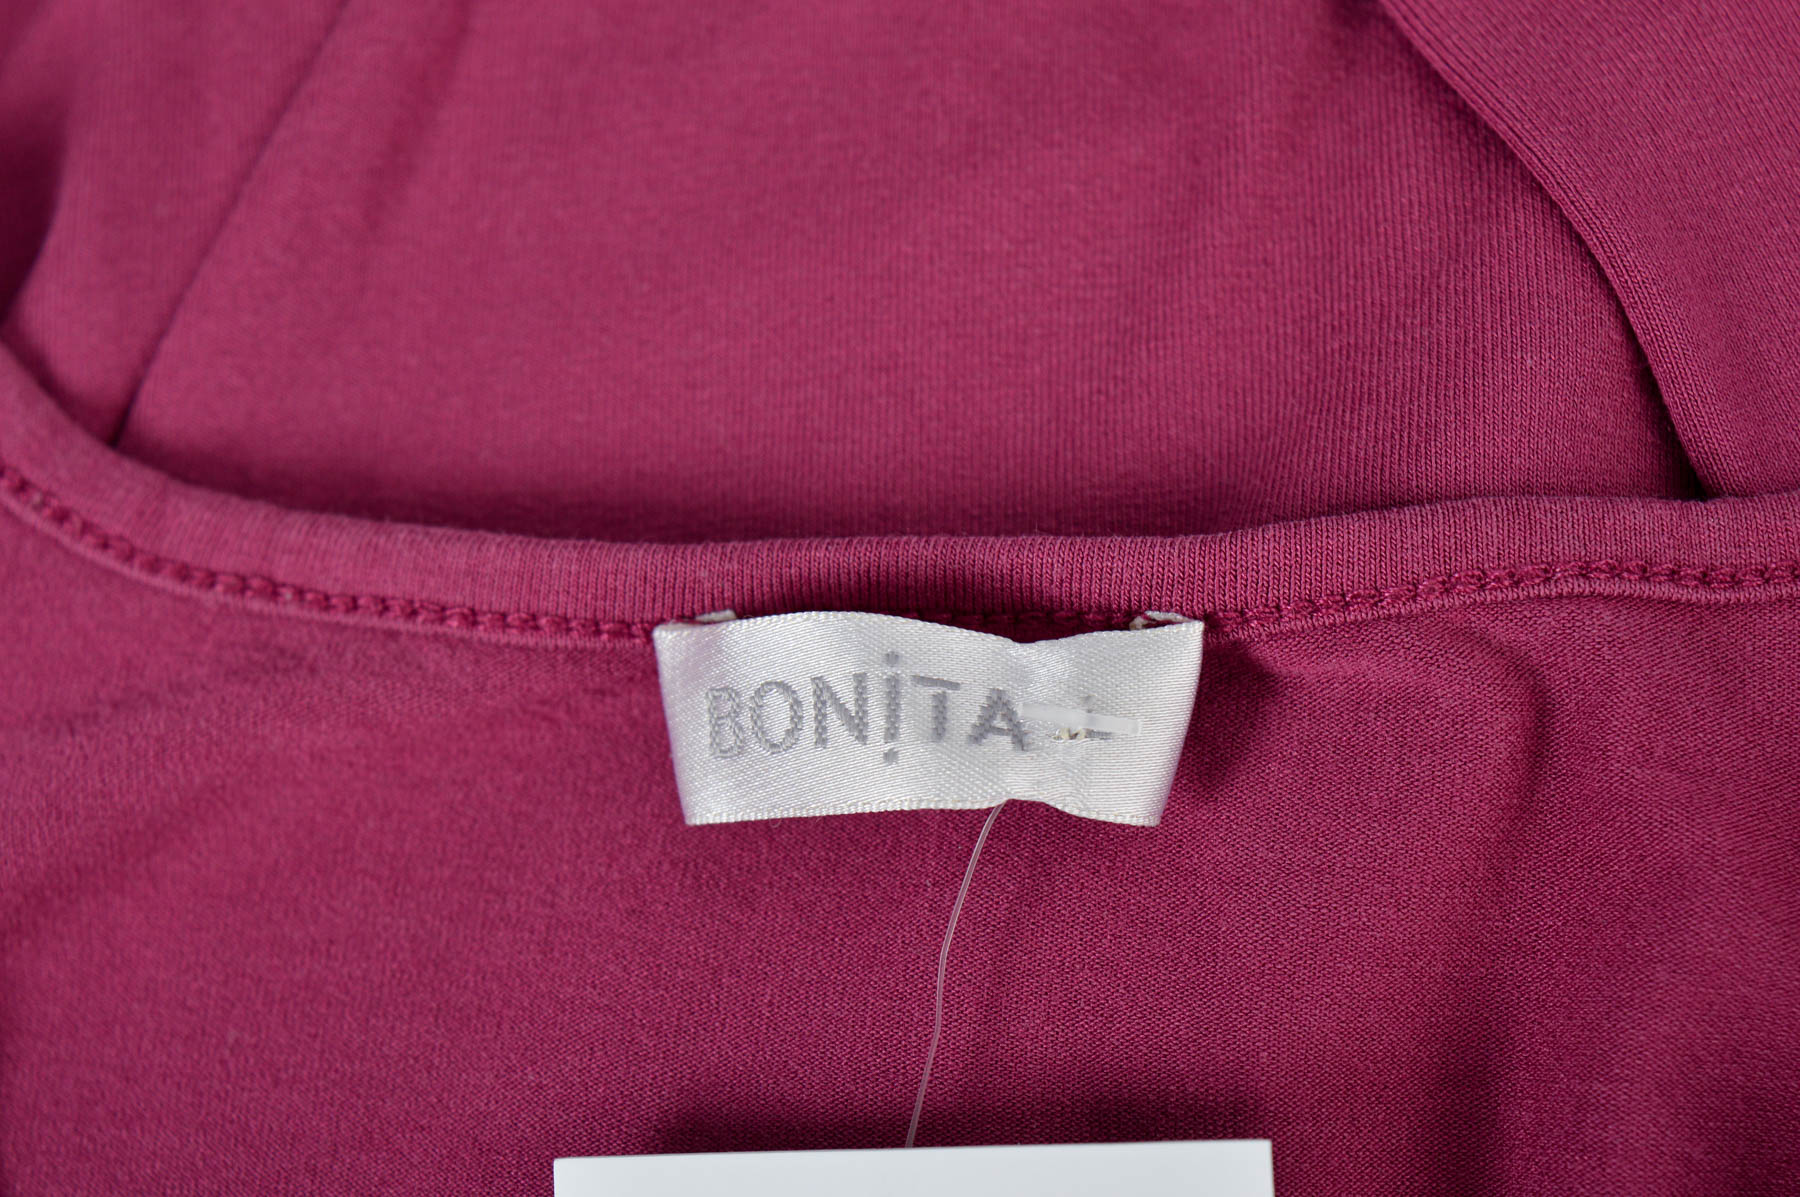 Γυναικεία μπλούζα - BONiTA - 2